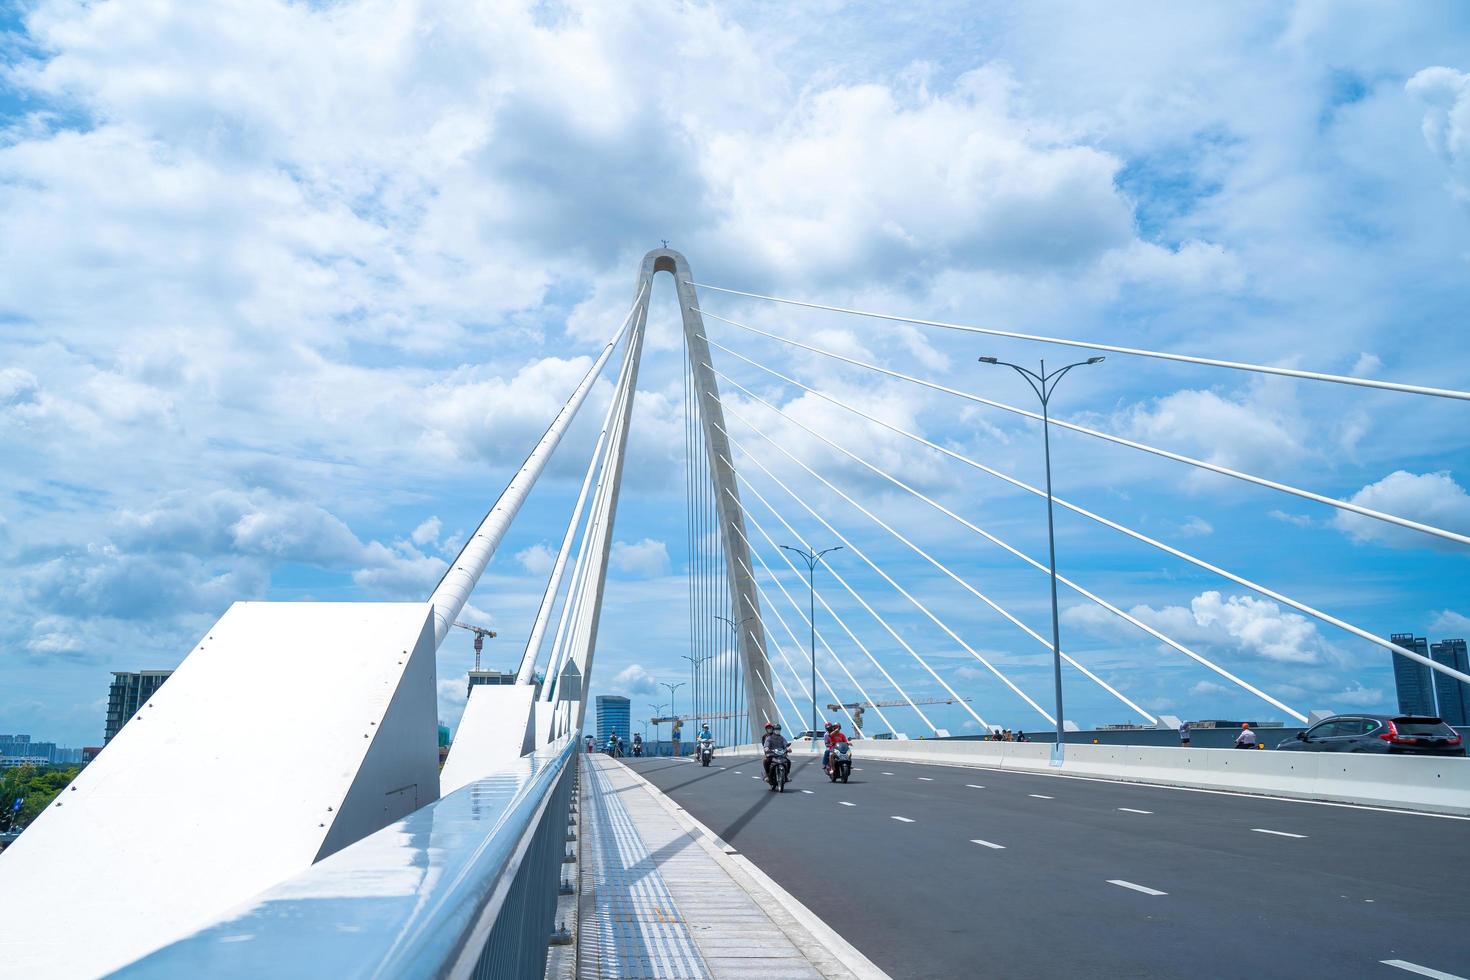 città di ho chi minh, vietnam - 22 maggio 2022 ponte thu thiem 2, che collega la penisola di thu thiem e il distretto 1 attraverso il fiume saigon nel porto di bach dang foto